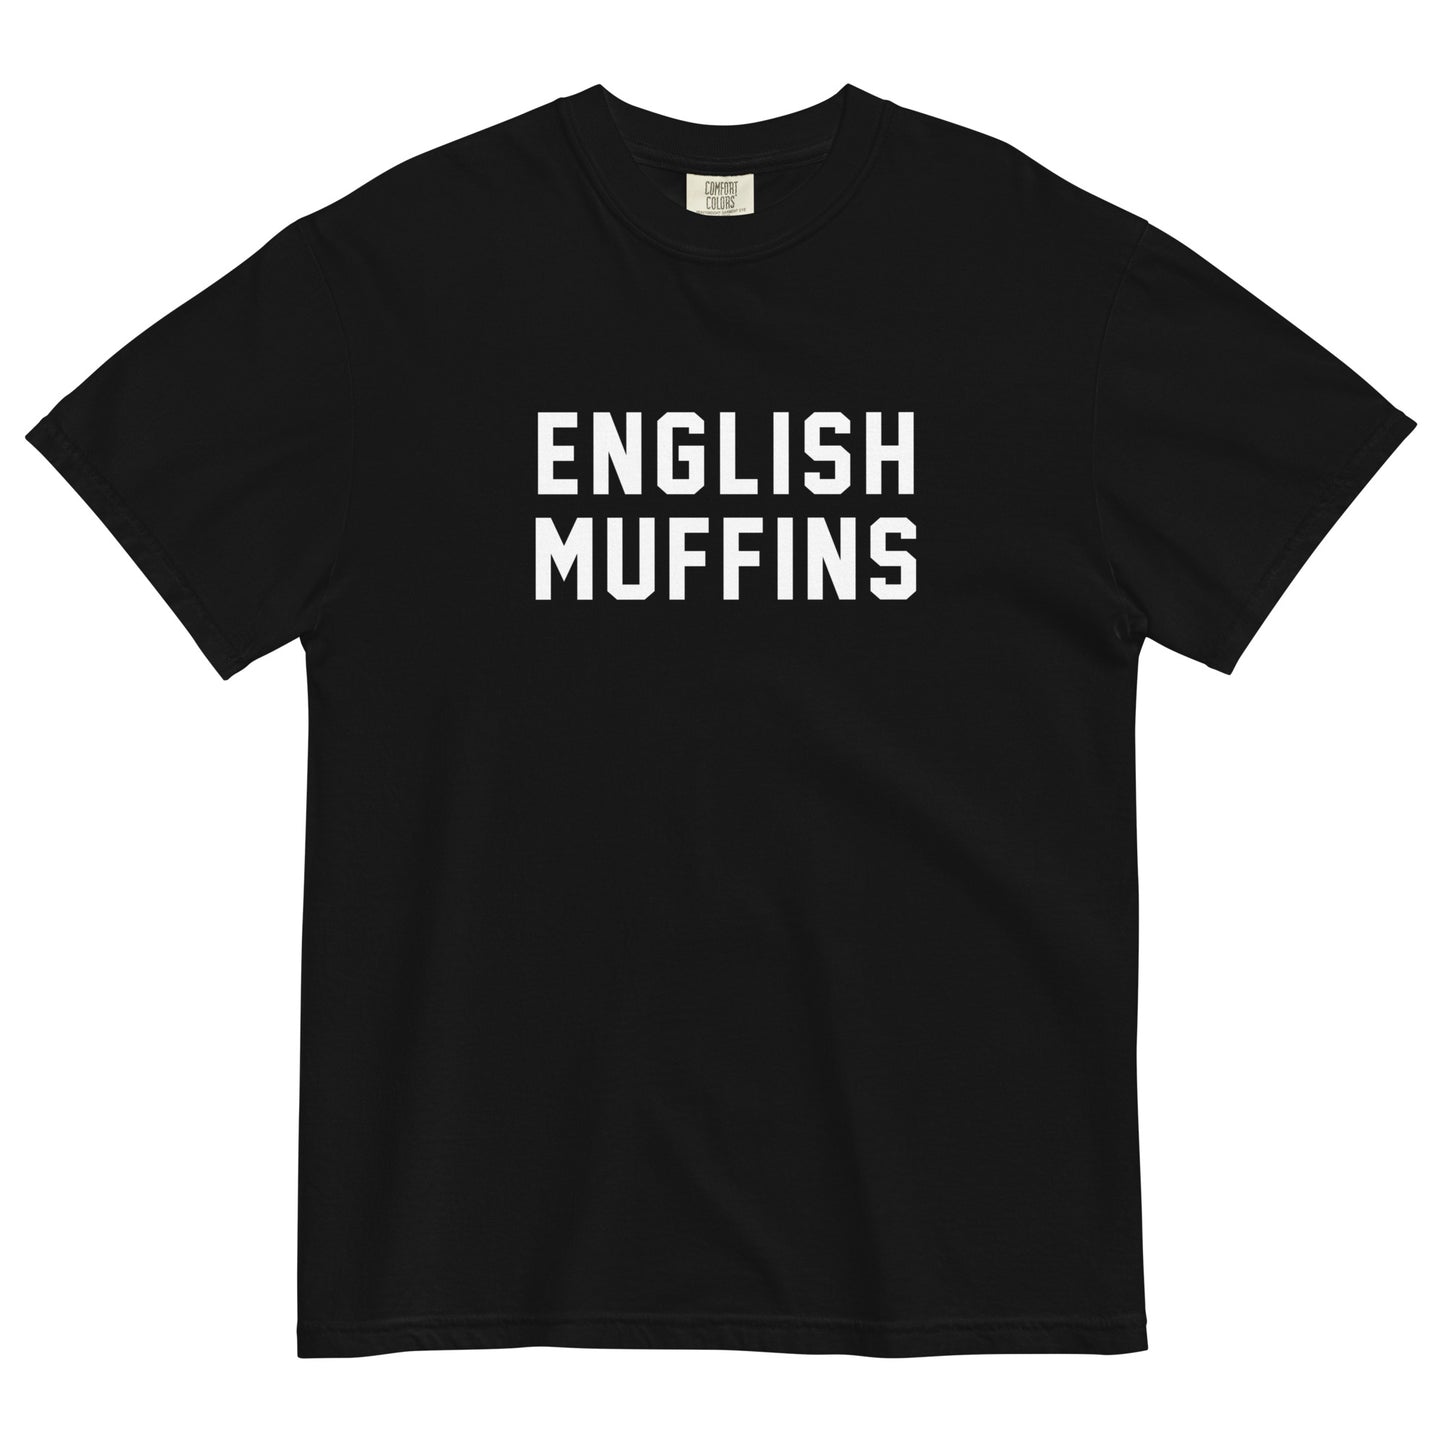 ENGLISH MUFFINS